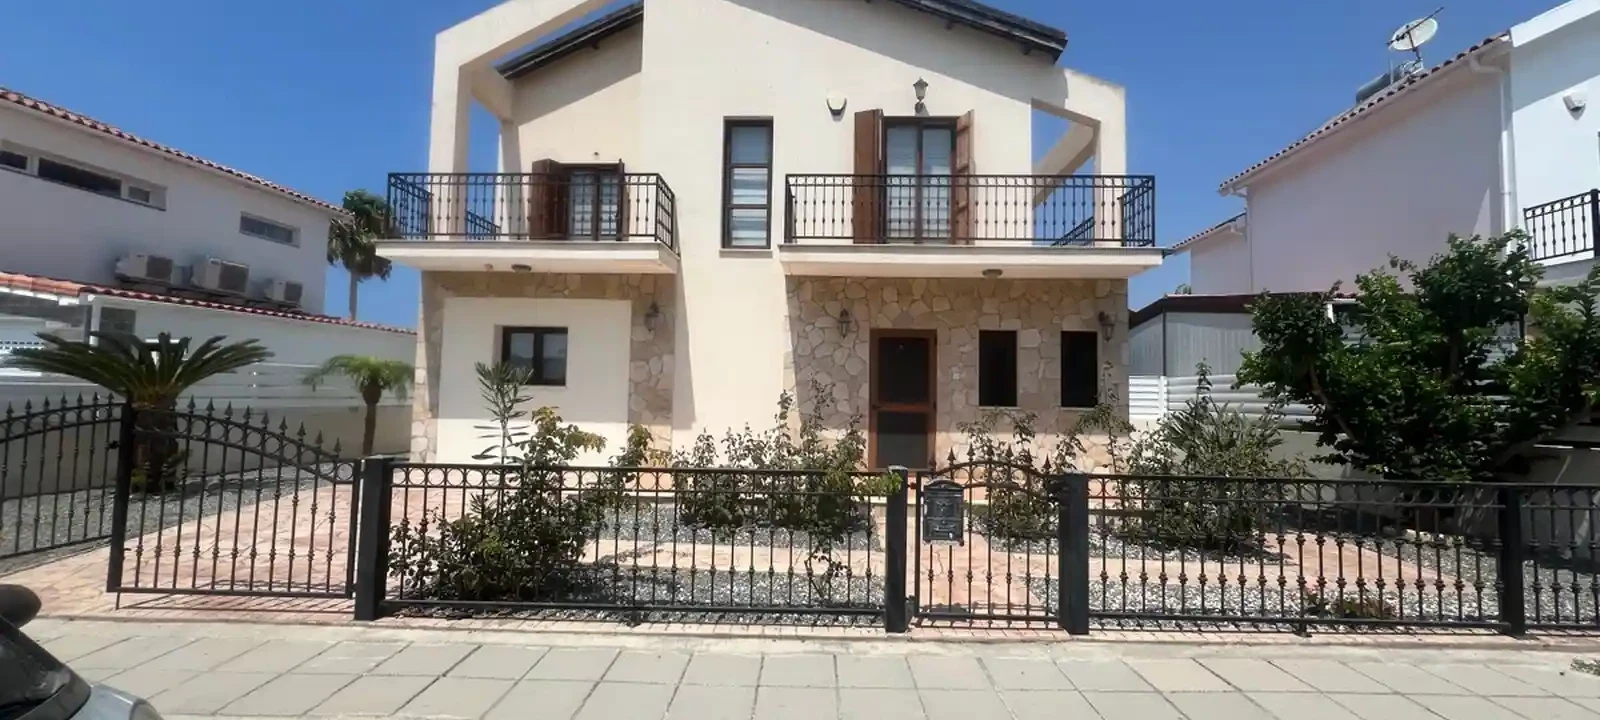 2-bedroom villa to rent €1.400, image 1